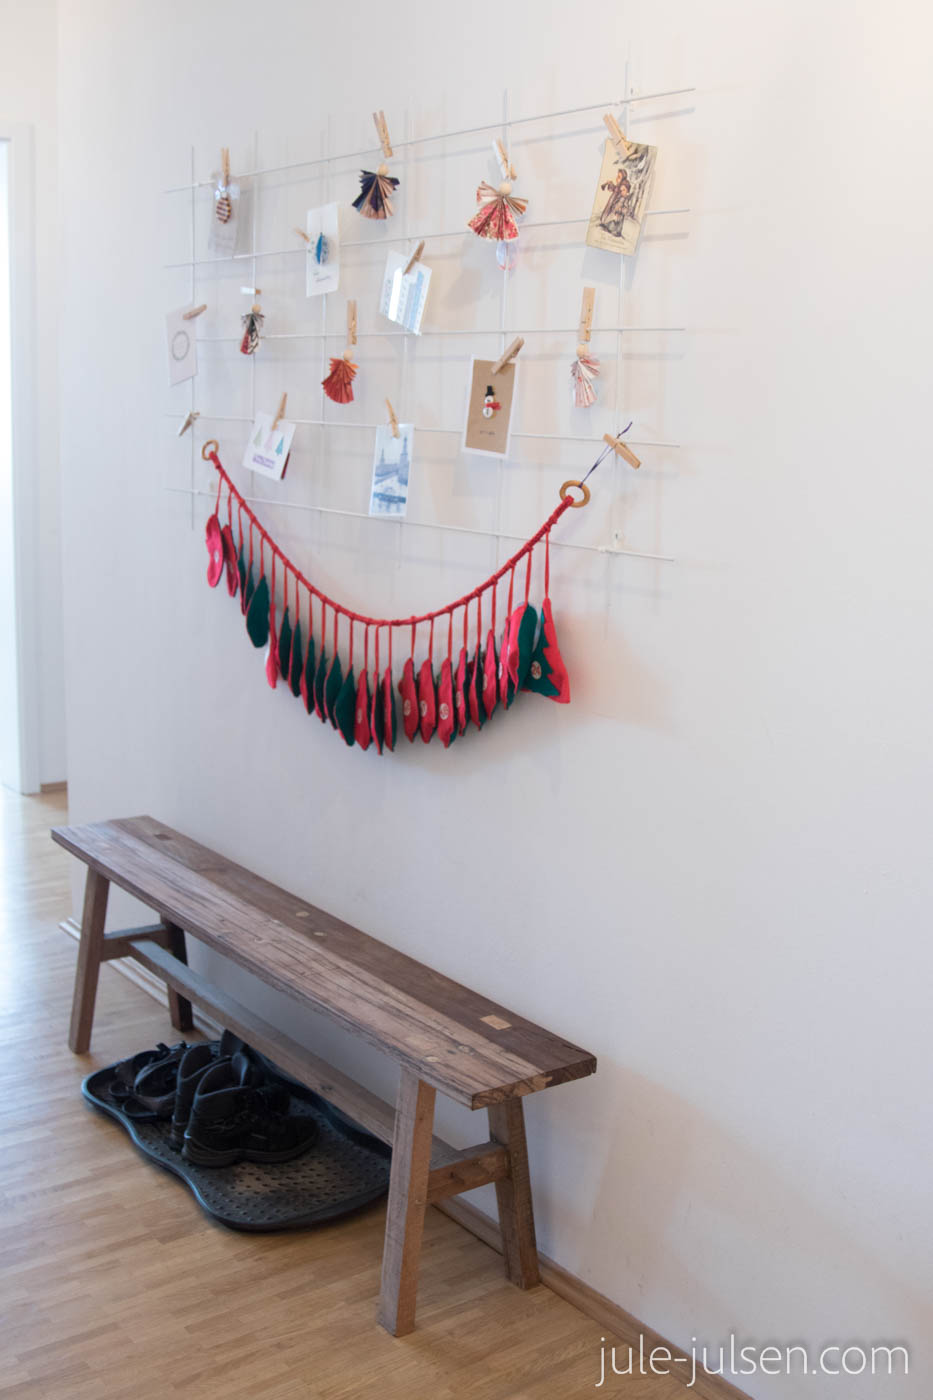 Deko aus selbst gemachten Weihnachtskarten und Papierengeln an einem Pflanzgitter